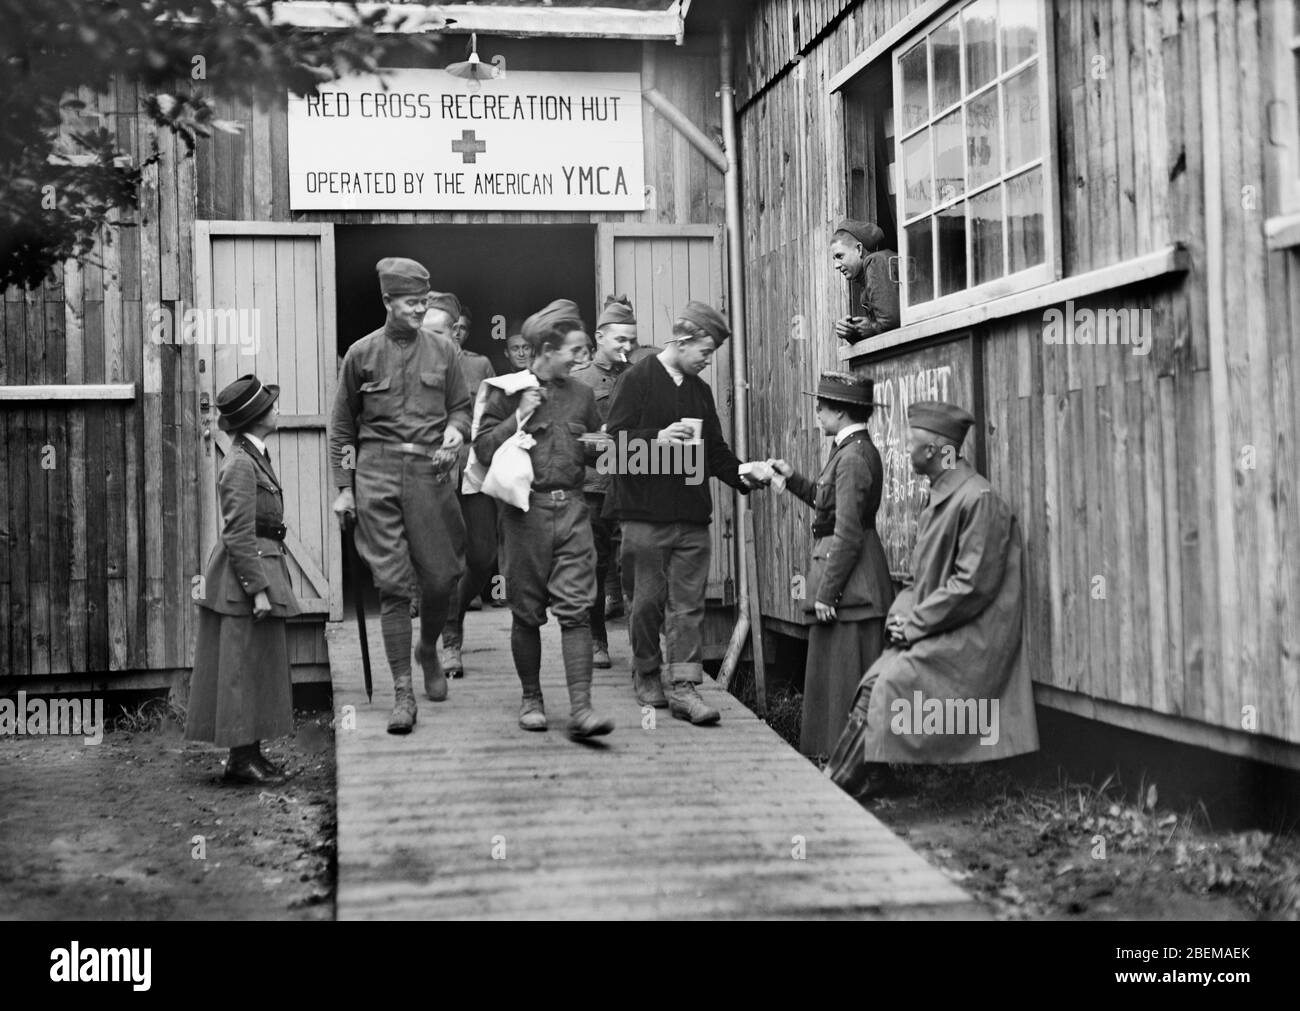 Amerikanische Soldaten verlassen die American Red Cross Recreation Hut im Base Hospital No. 6, betrieben von der American YMCA, Bordeaux, Frankreich, Lewis Wickes Hine, American National Red Cross Photograph Collection, Oktober 1918 Stockfoto